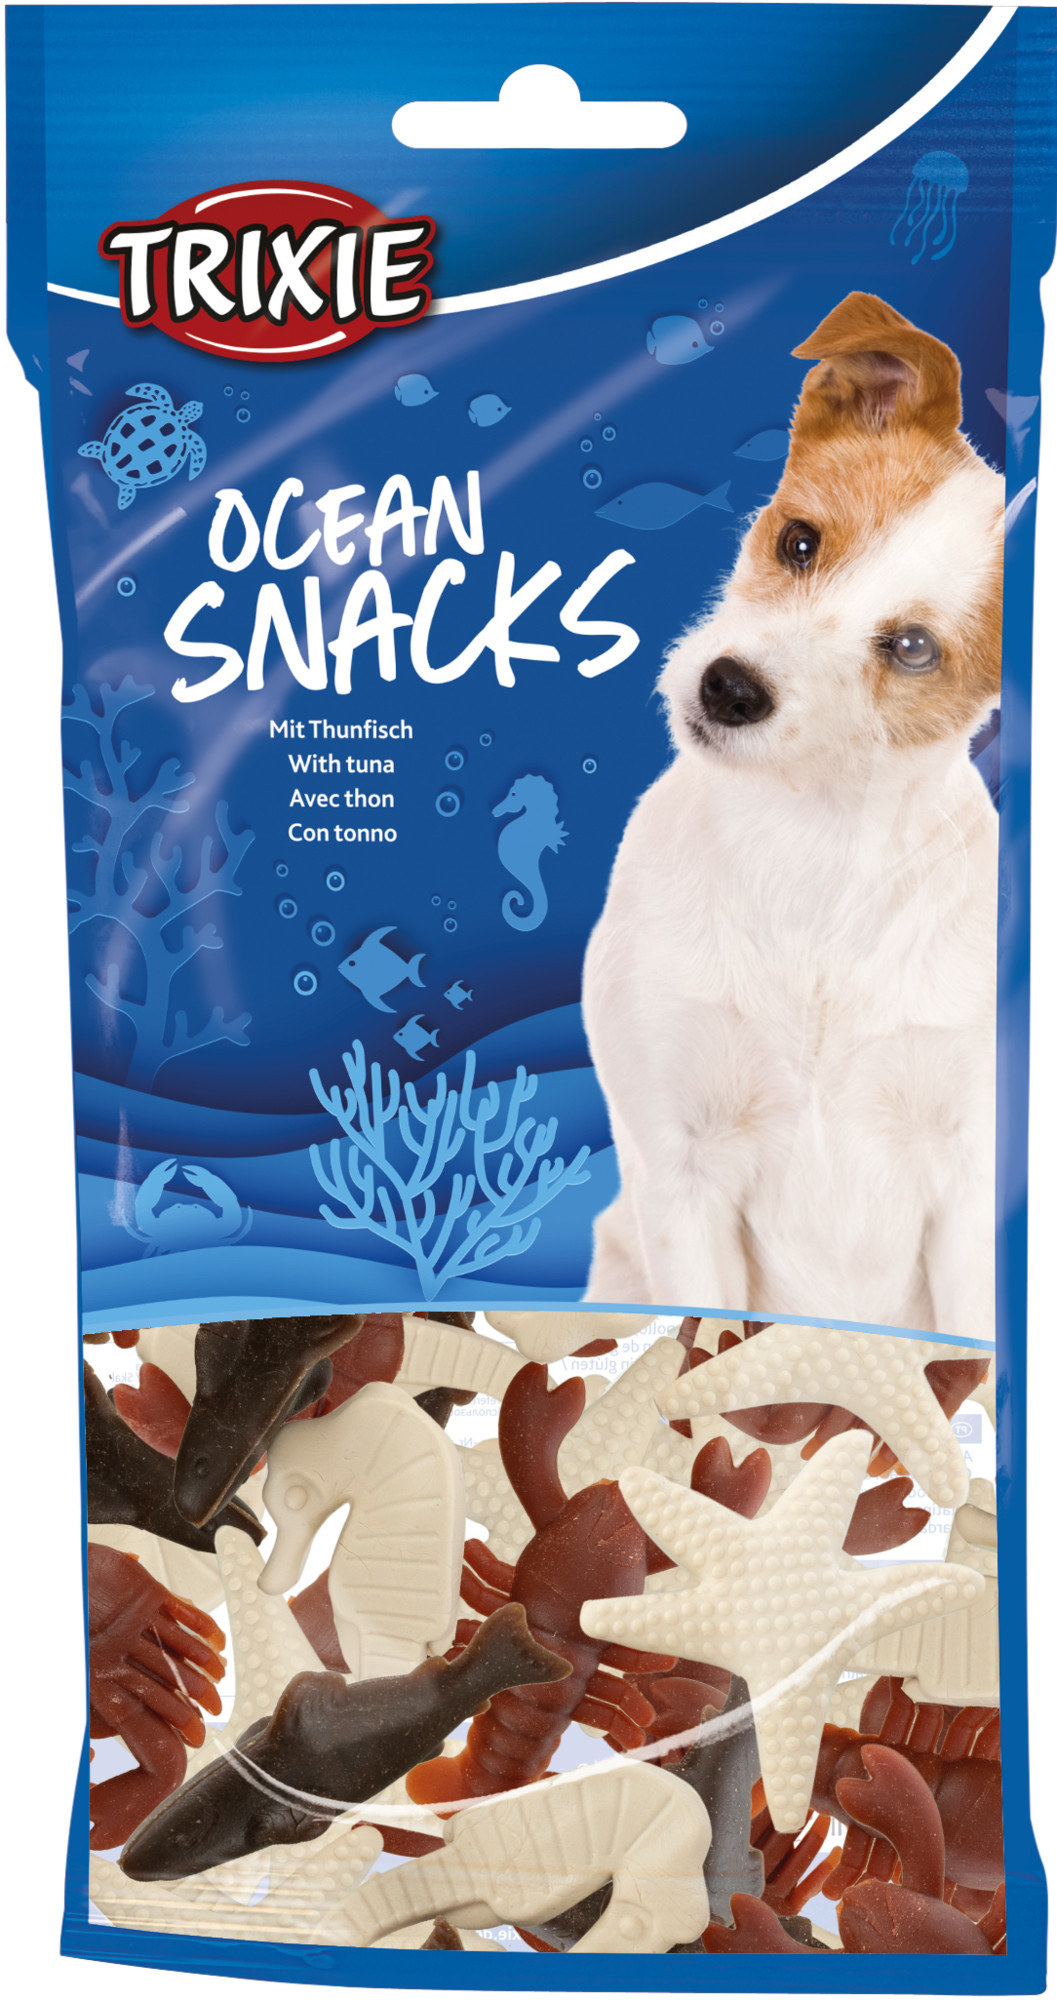 Trixie Ocean Snacks mit Thunfisch für Hunde